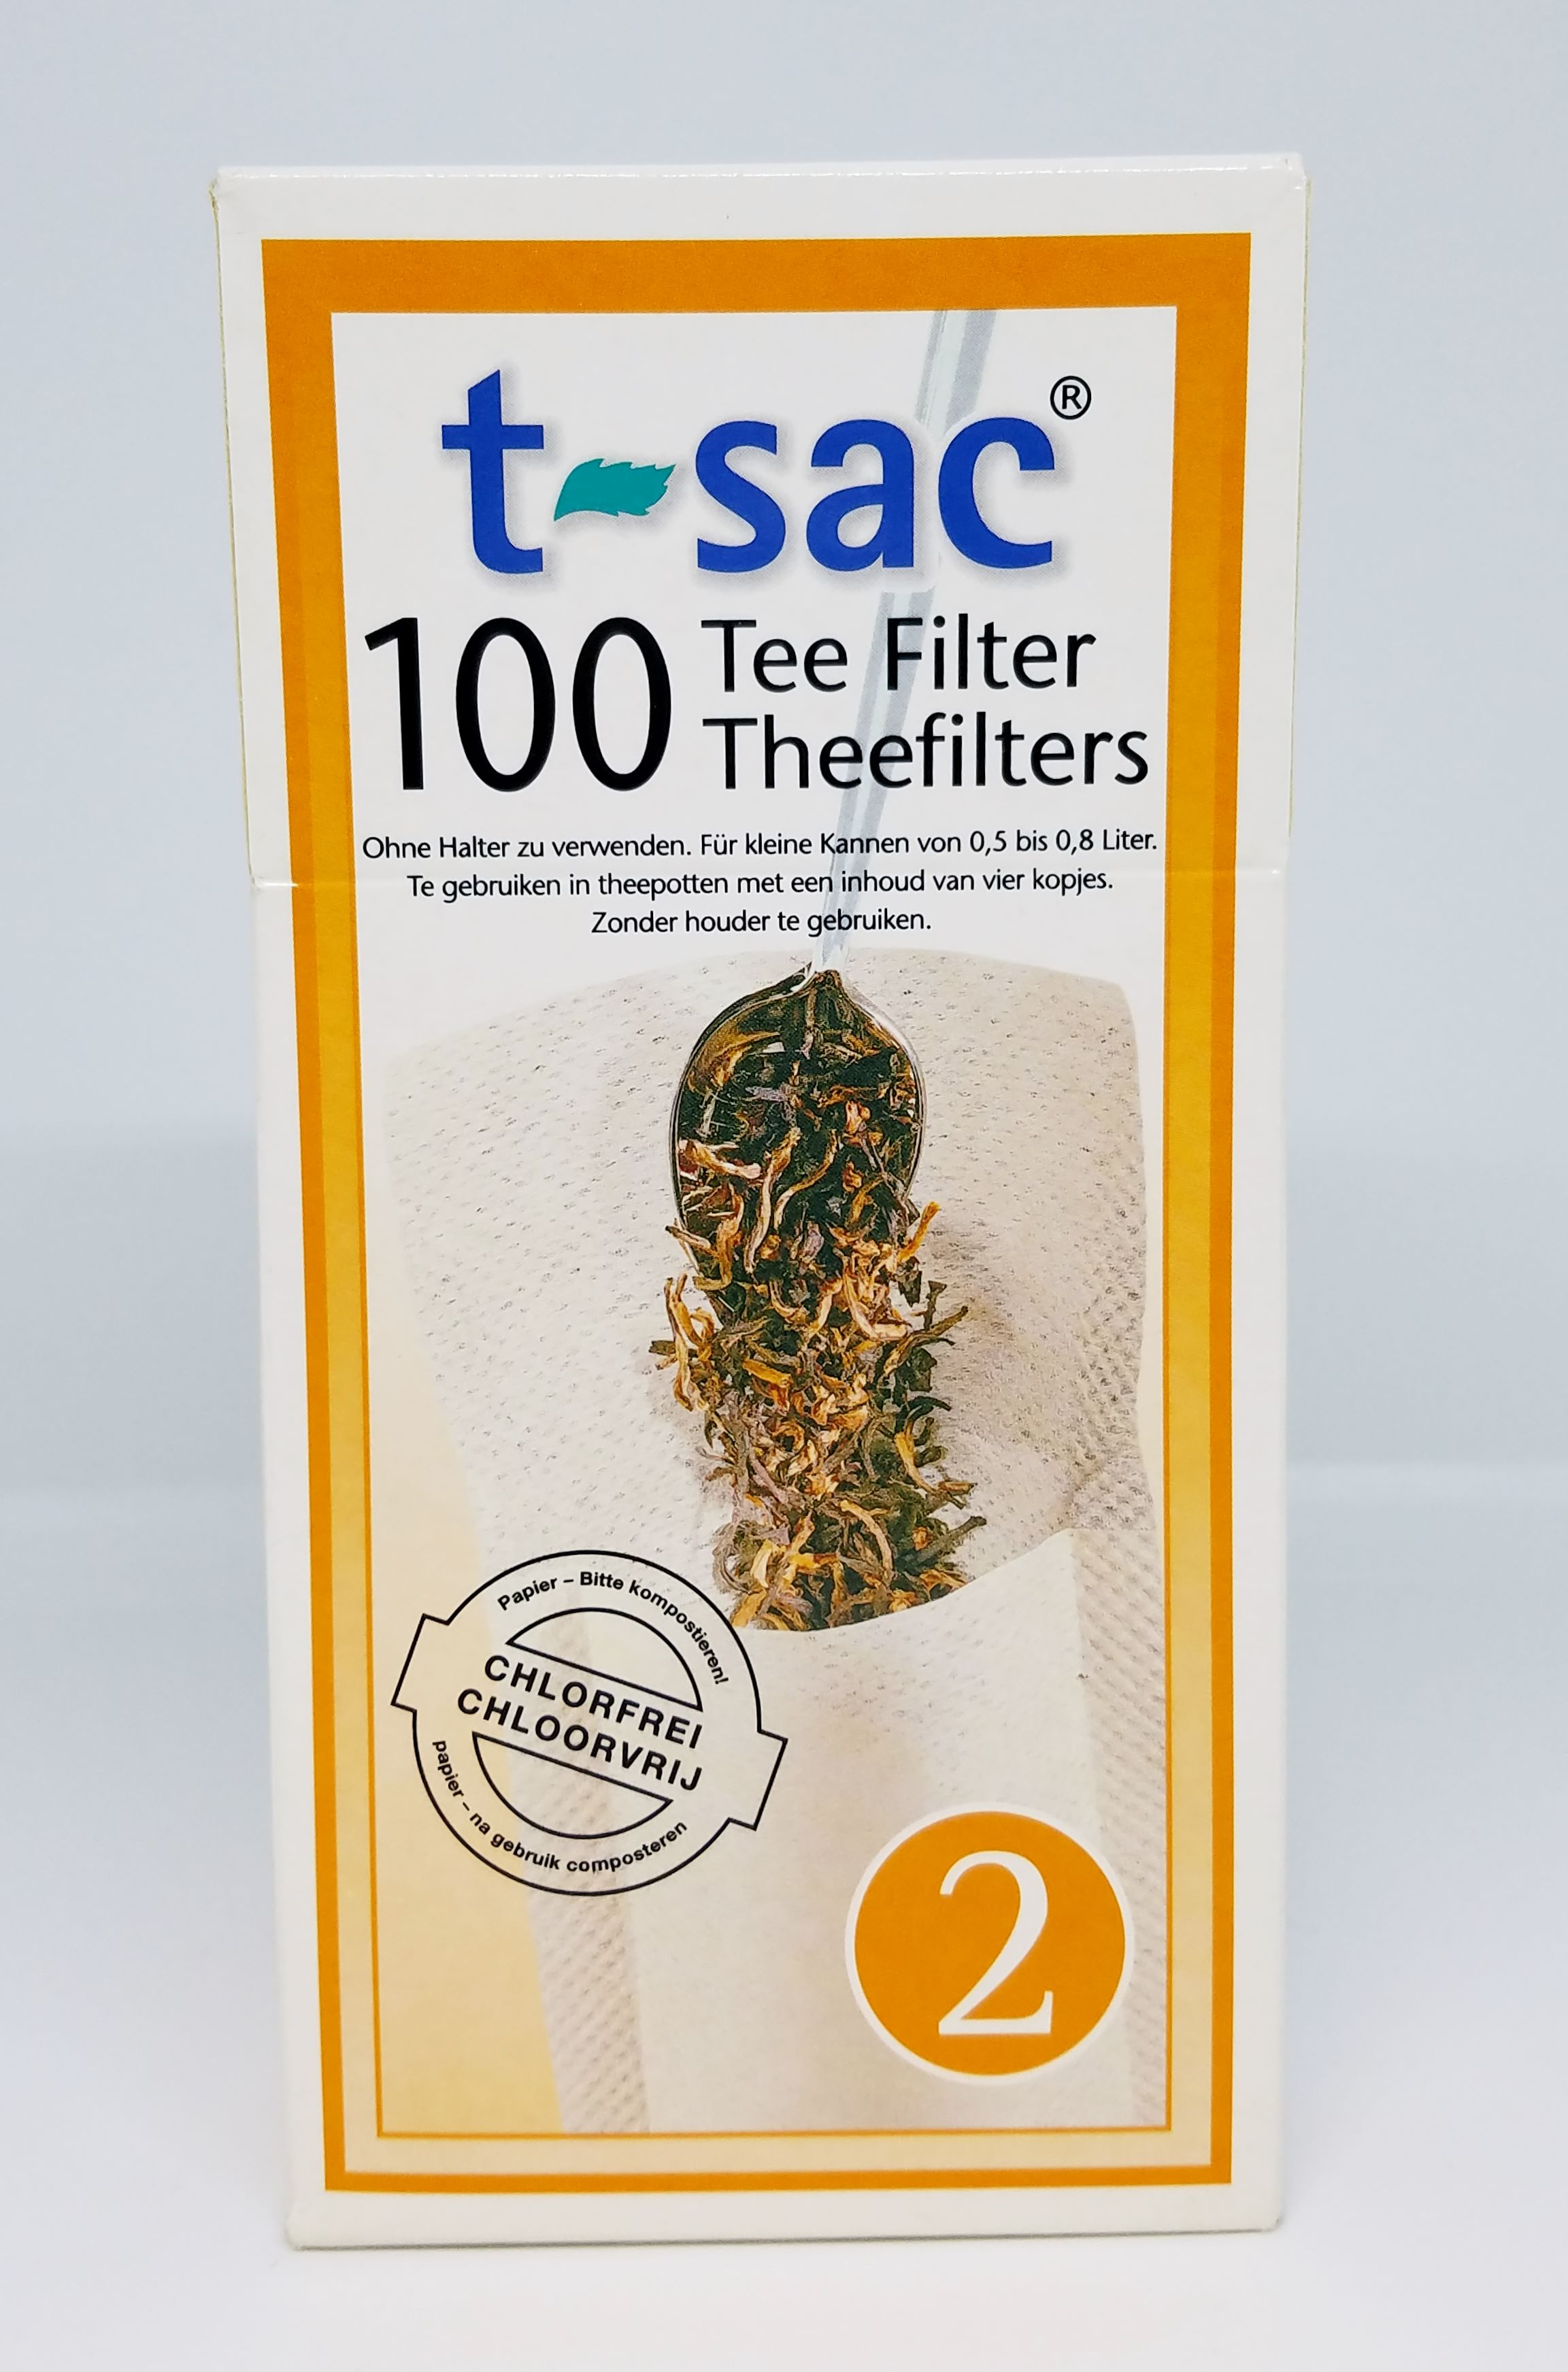 tsac tea filters